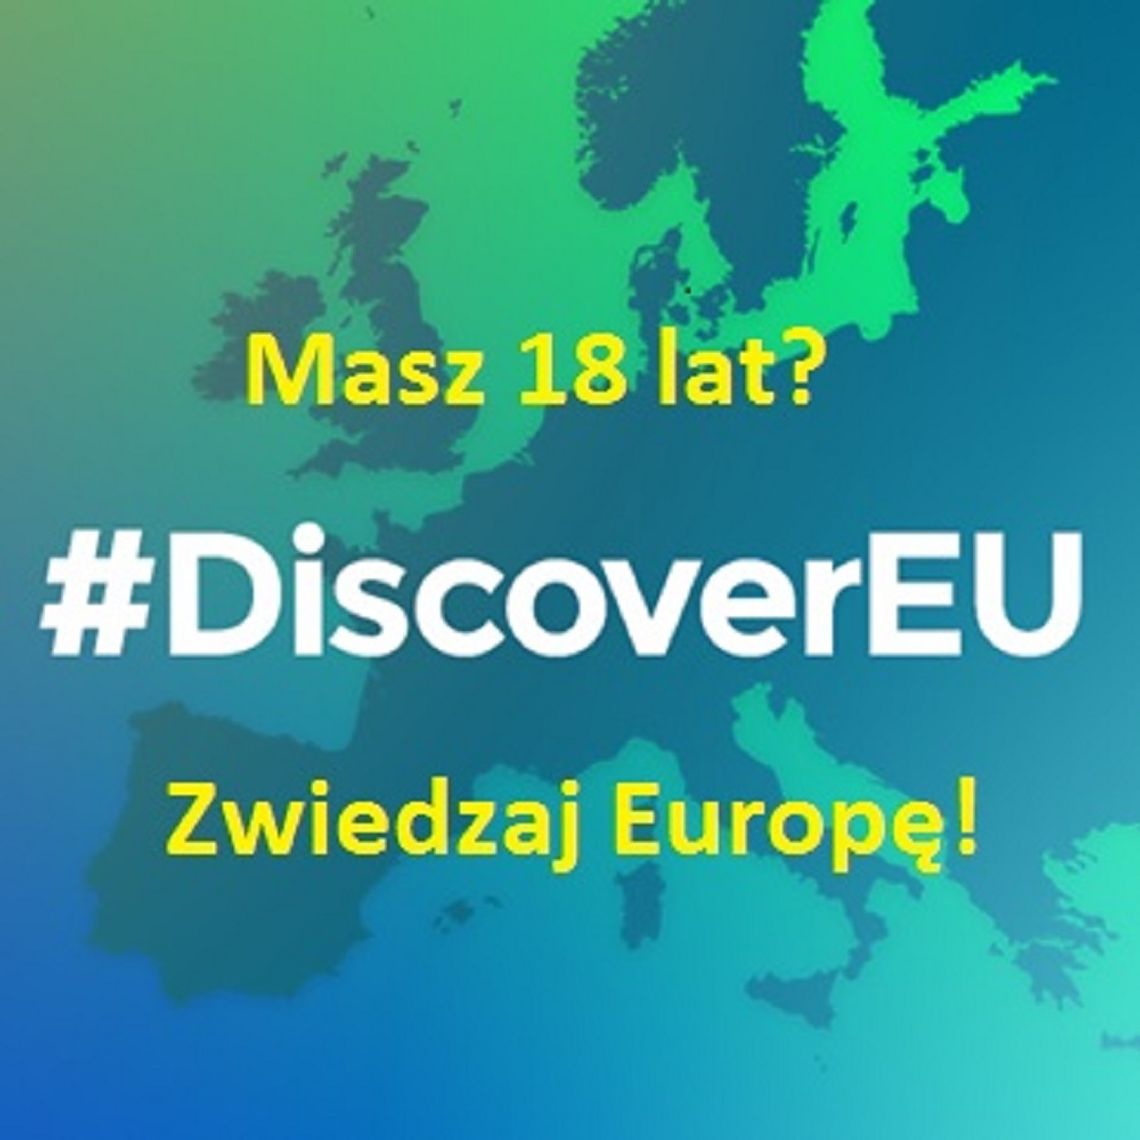 Zwiedzaj Europę! Konkurs Discover EU dla młodych